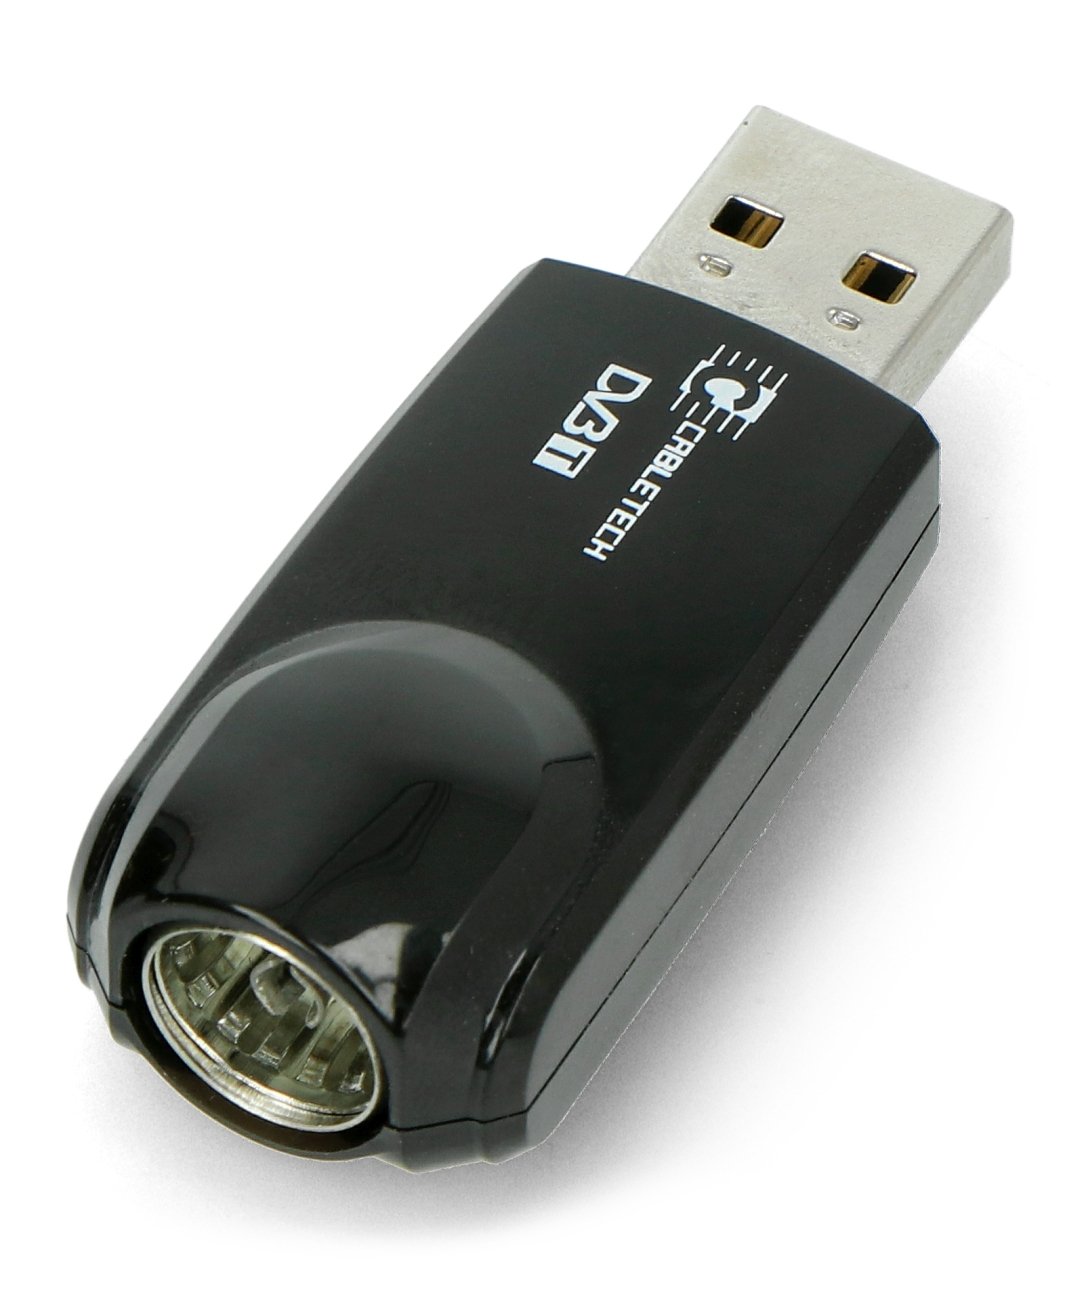 USB tuner pro DVB-T TV